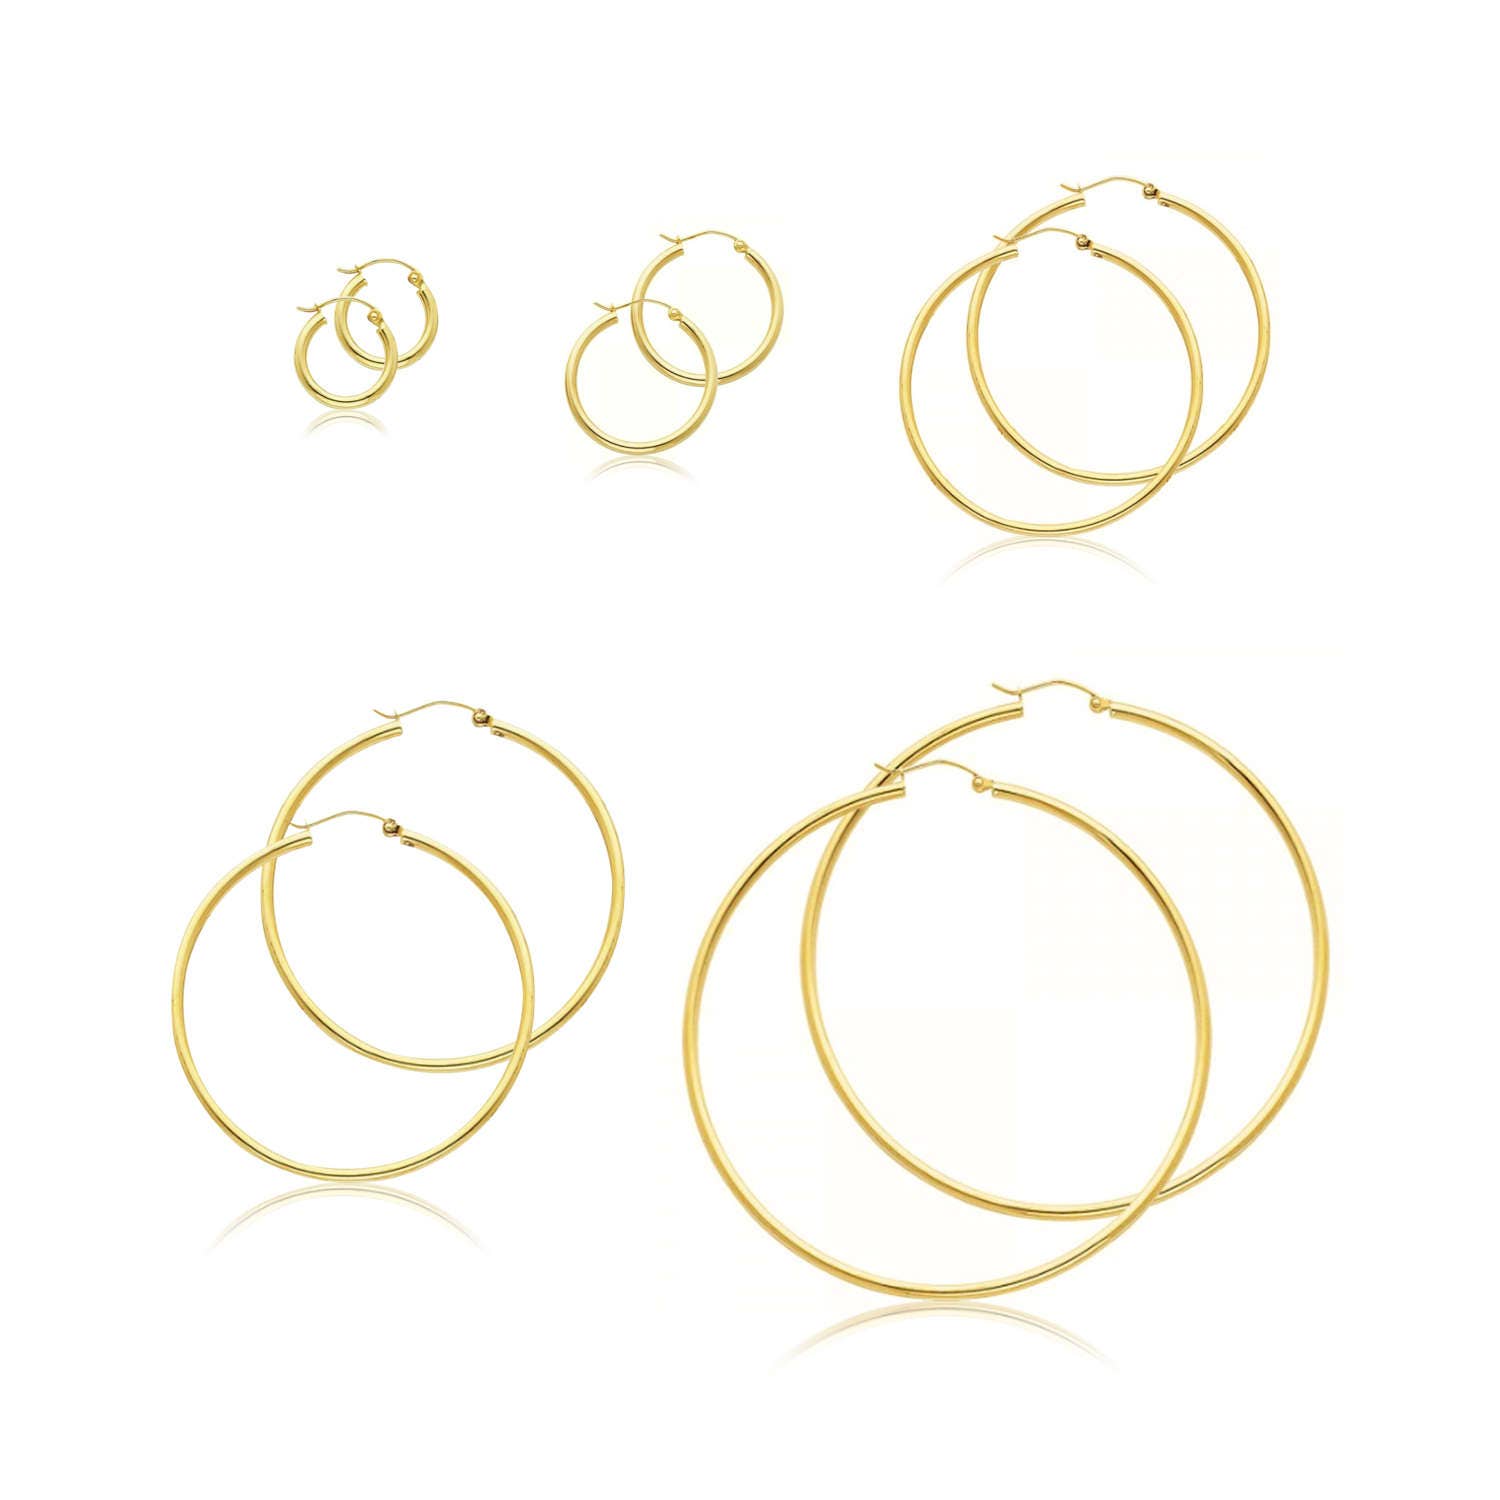 Minimalist Plain Circle Hoop Earrings In 18K Gold Plated Sterling Silver |  Big hoop earrings, Vintage gold earrings, Etsy earrings